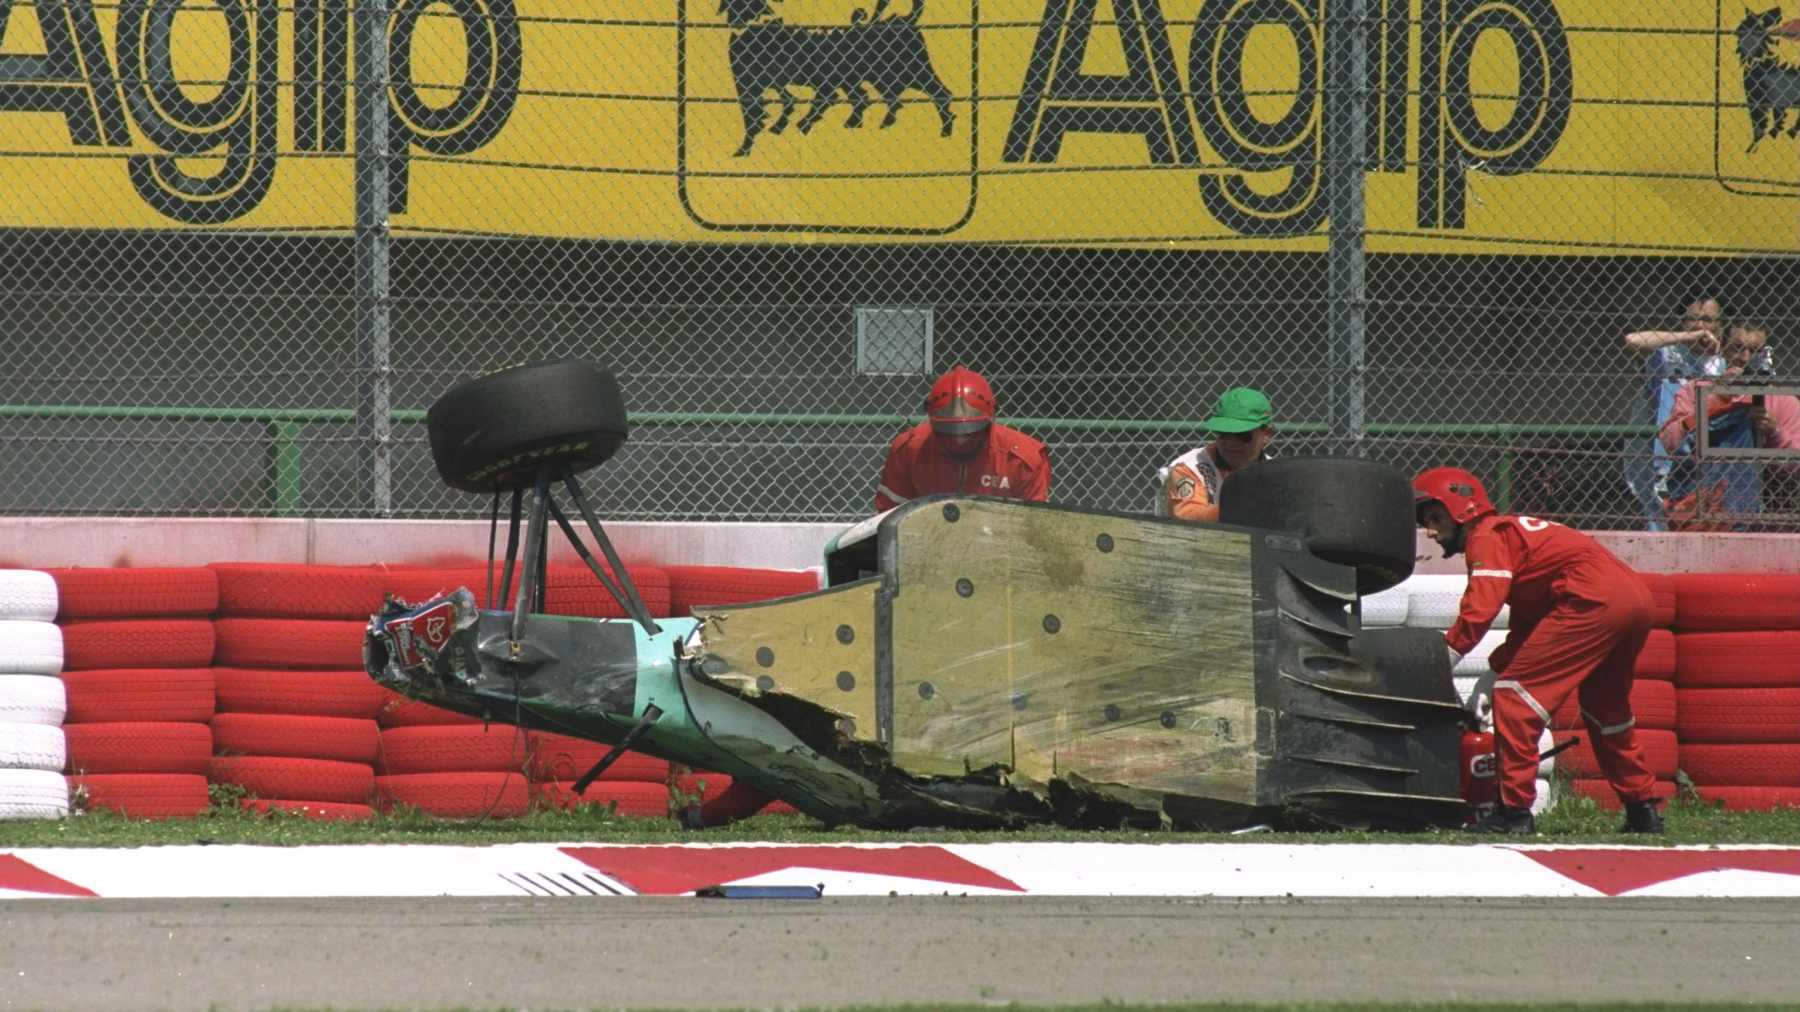 Rubens Barrichelon romuttunut auto kyljellään Imolan radan ratavallissa vuonna 1994.